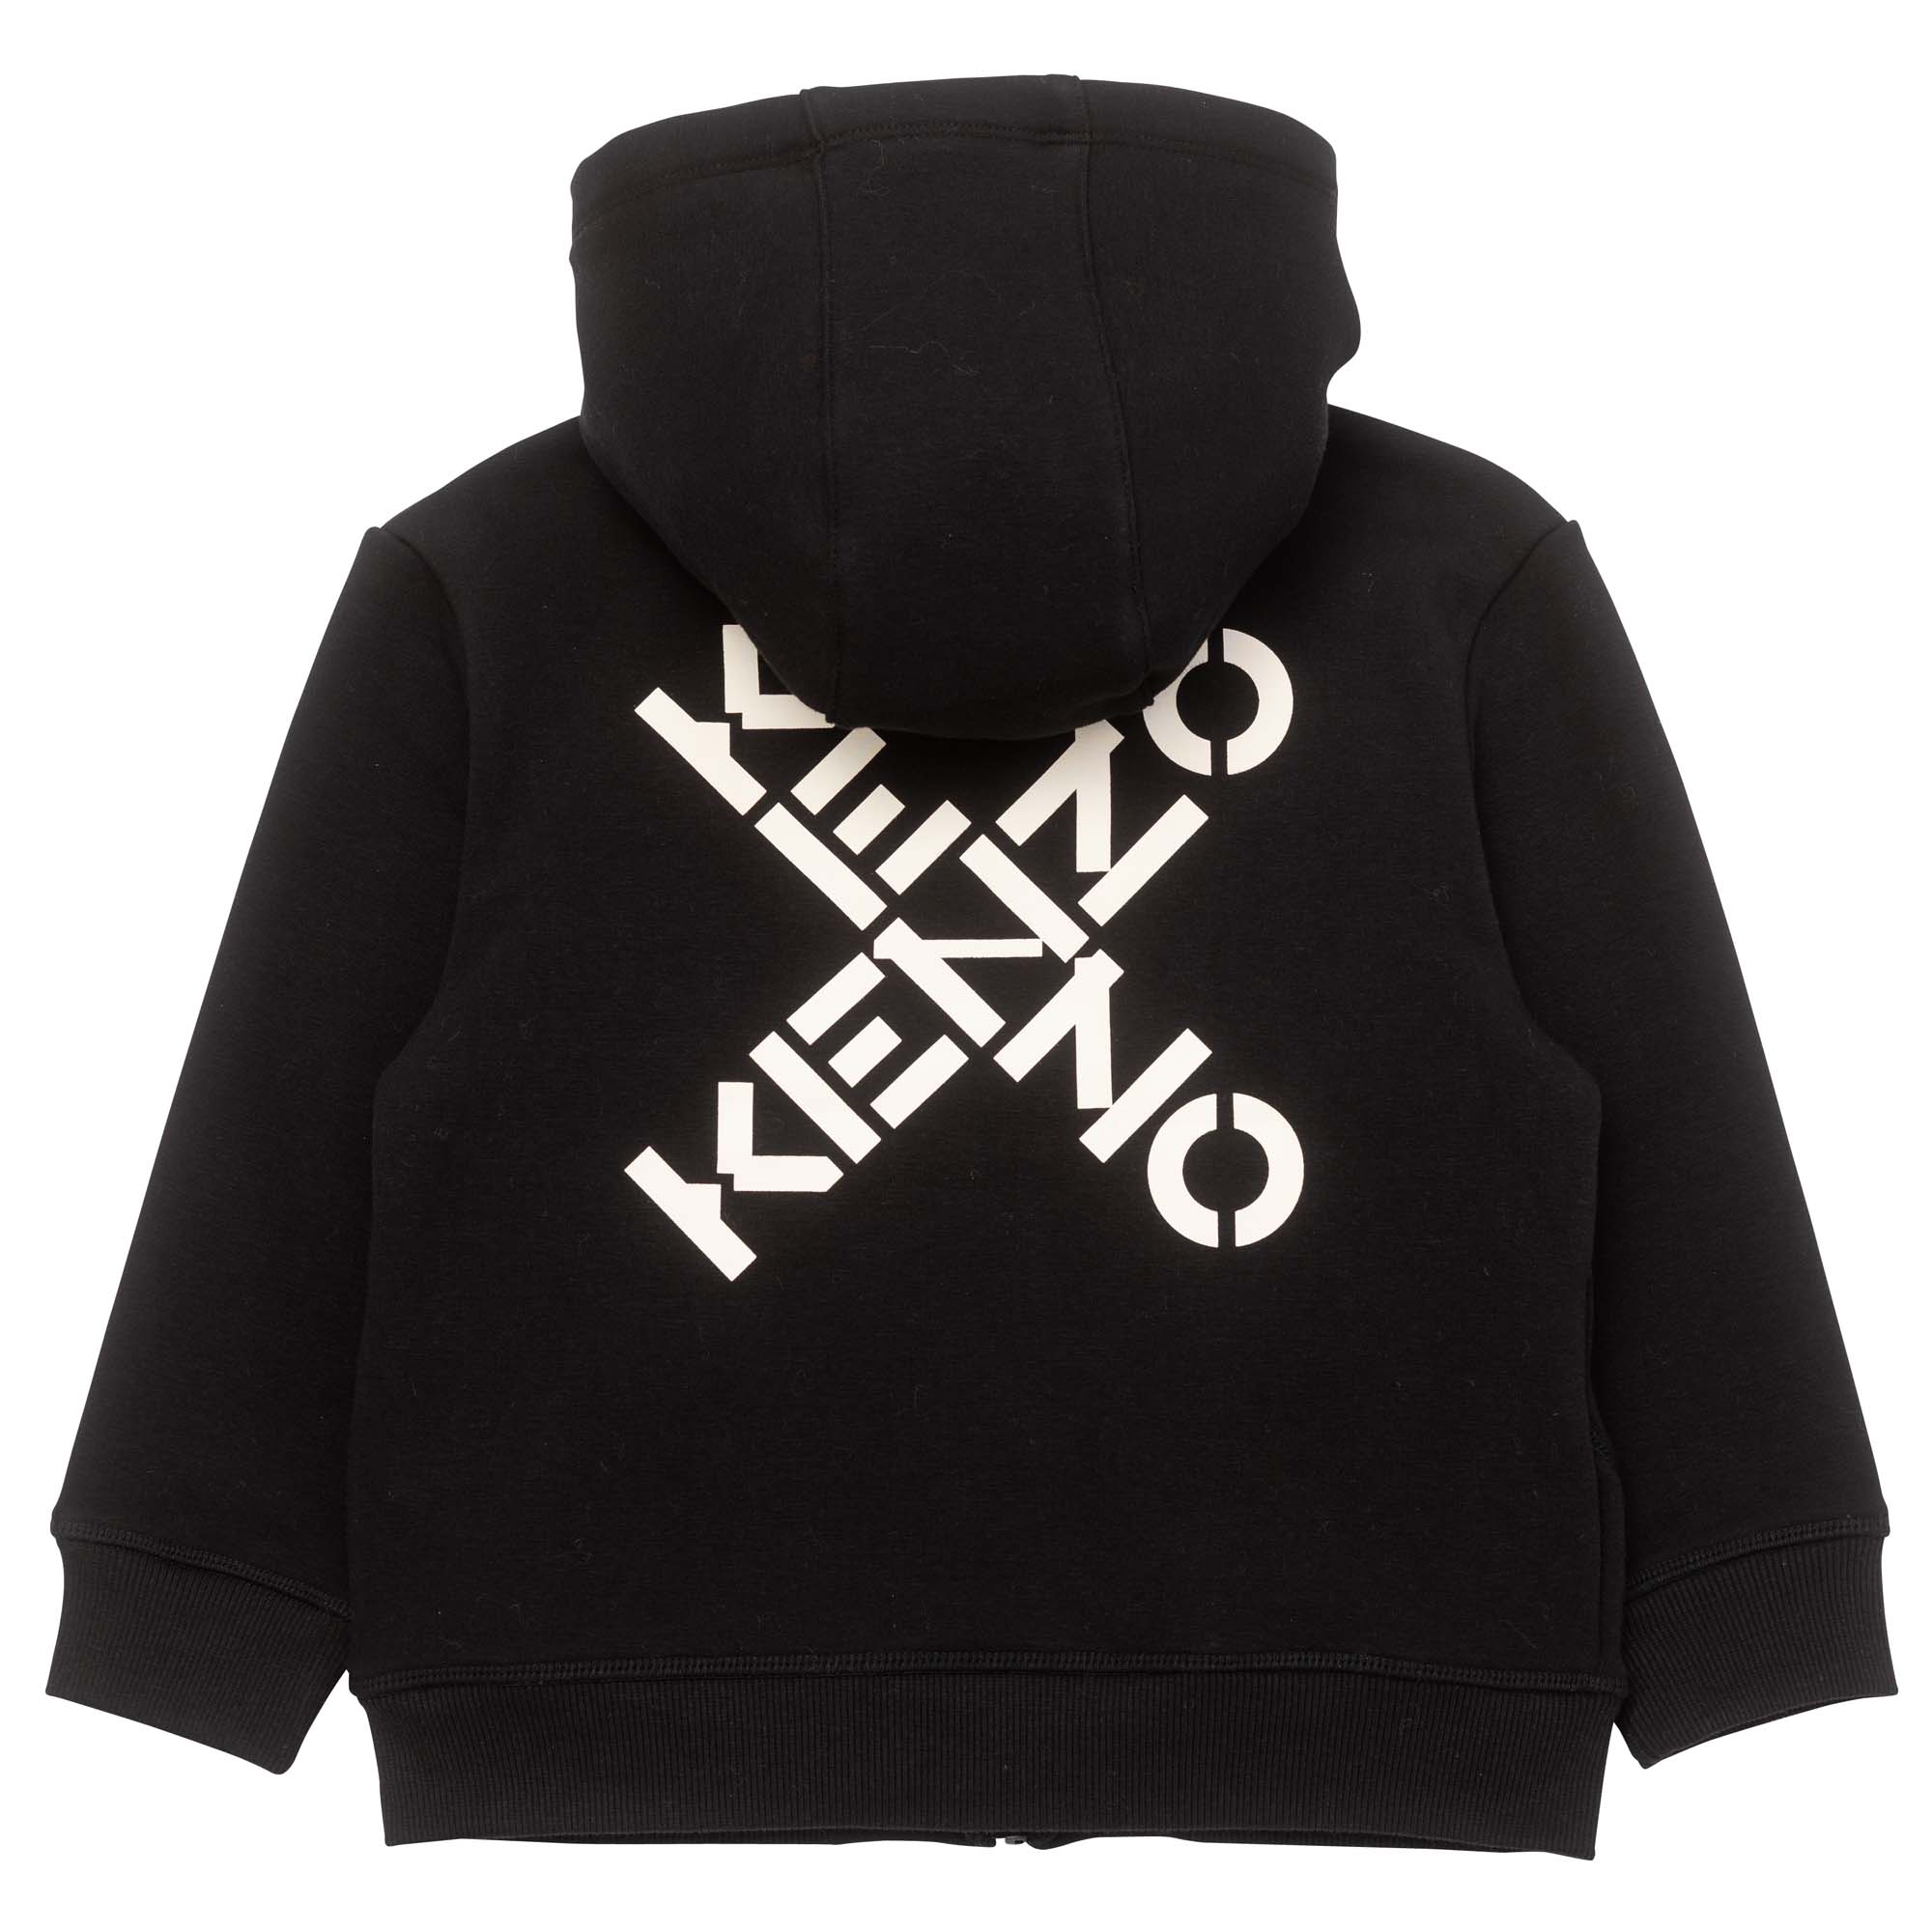 Sweatshirt met capuchon KENZO KIDS Voor